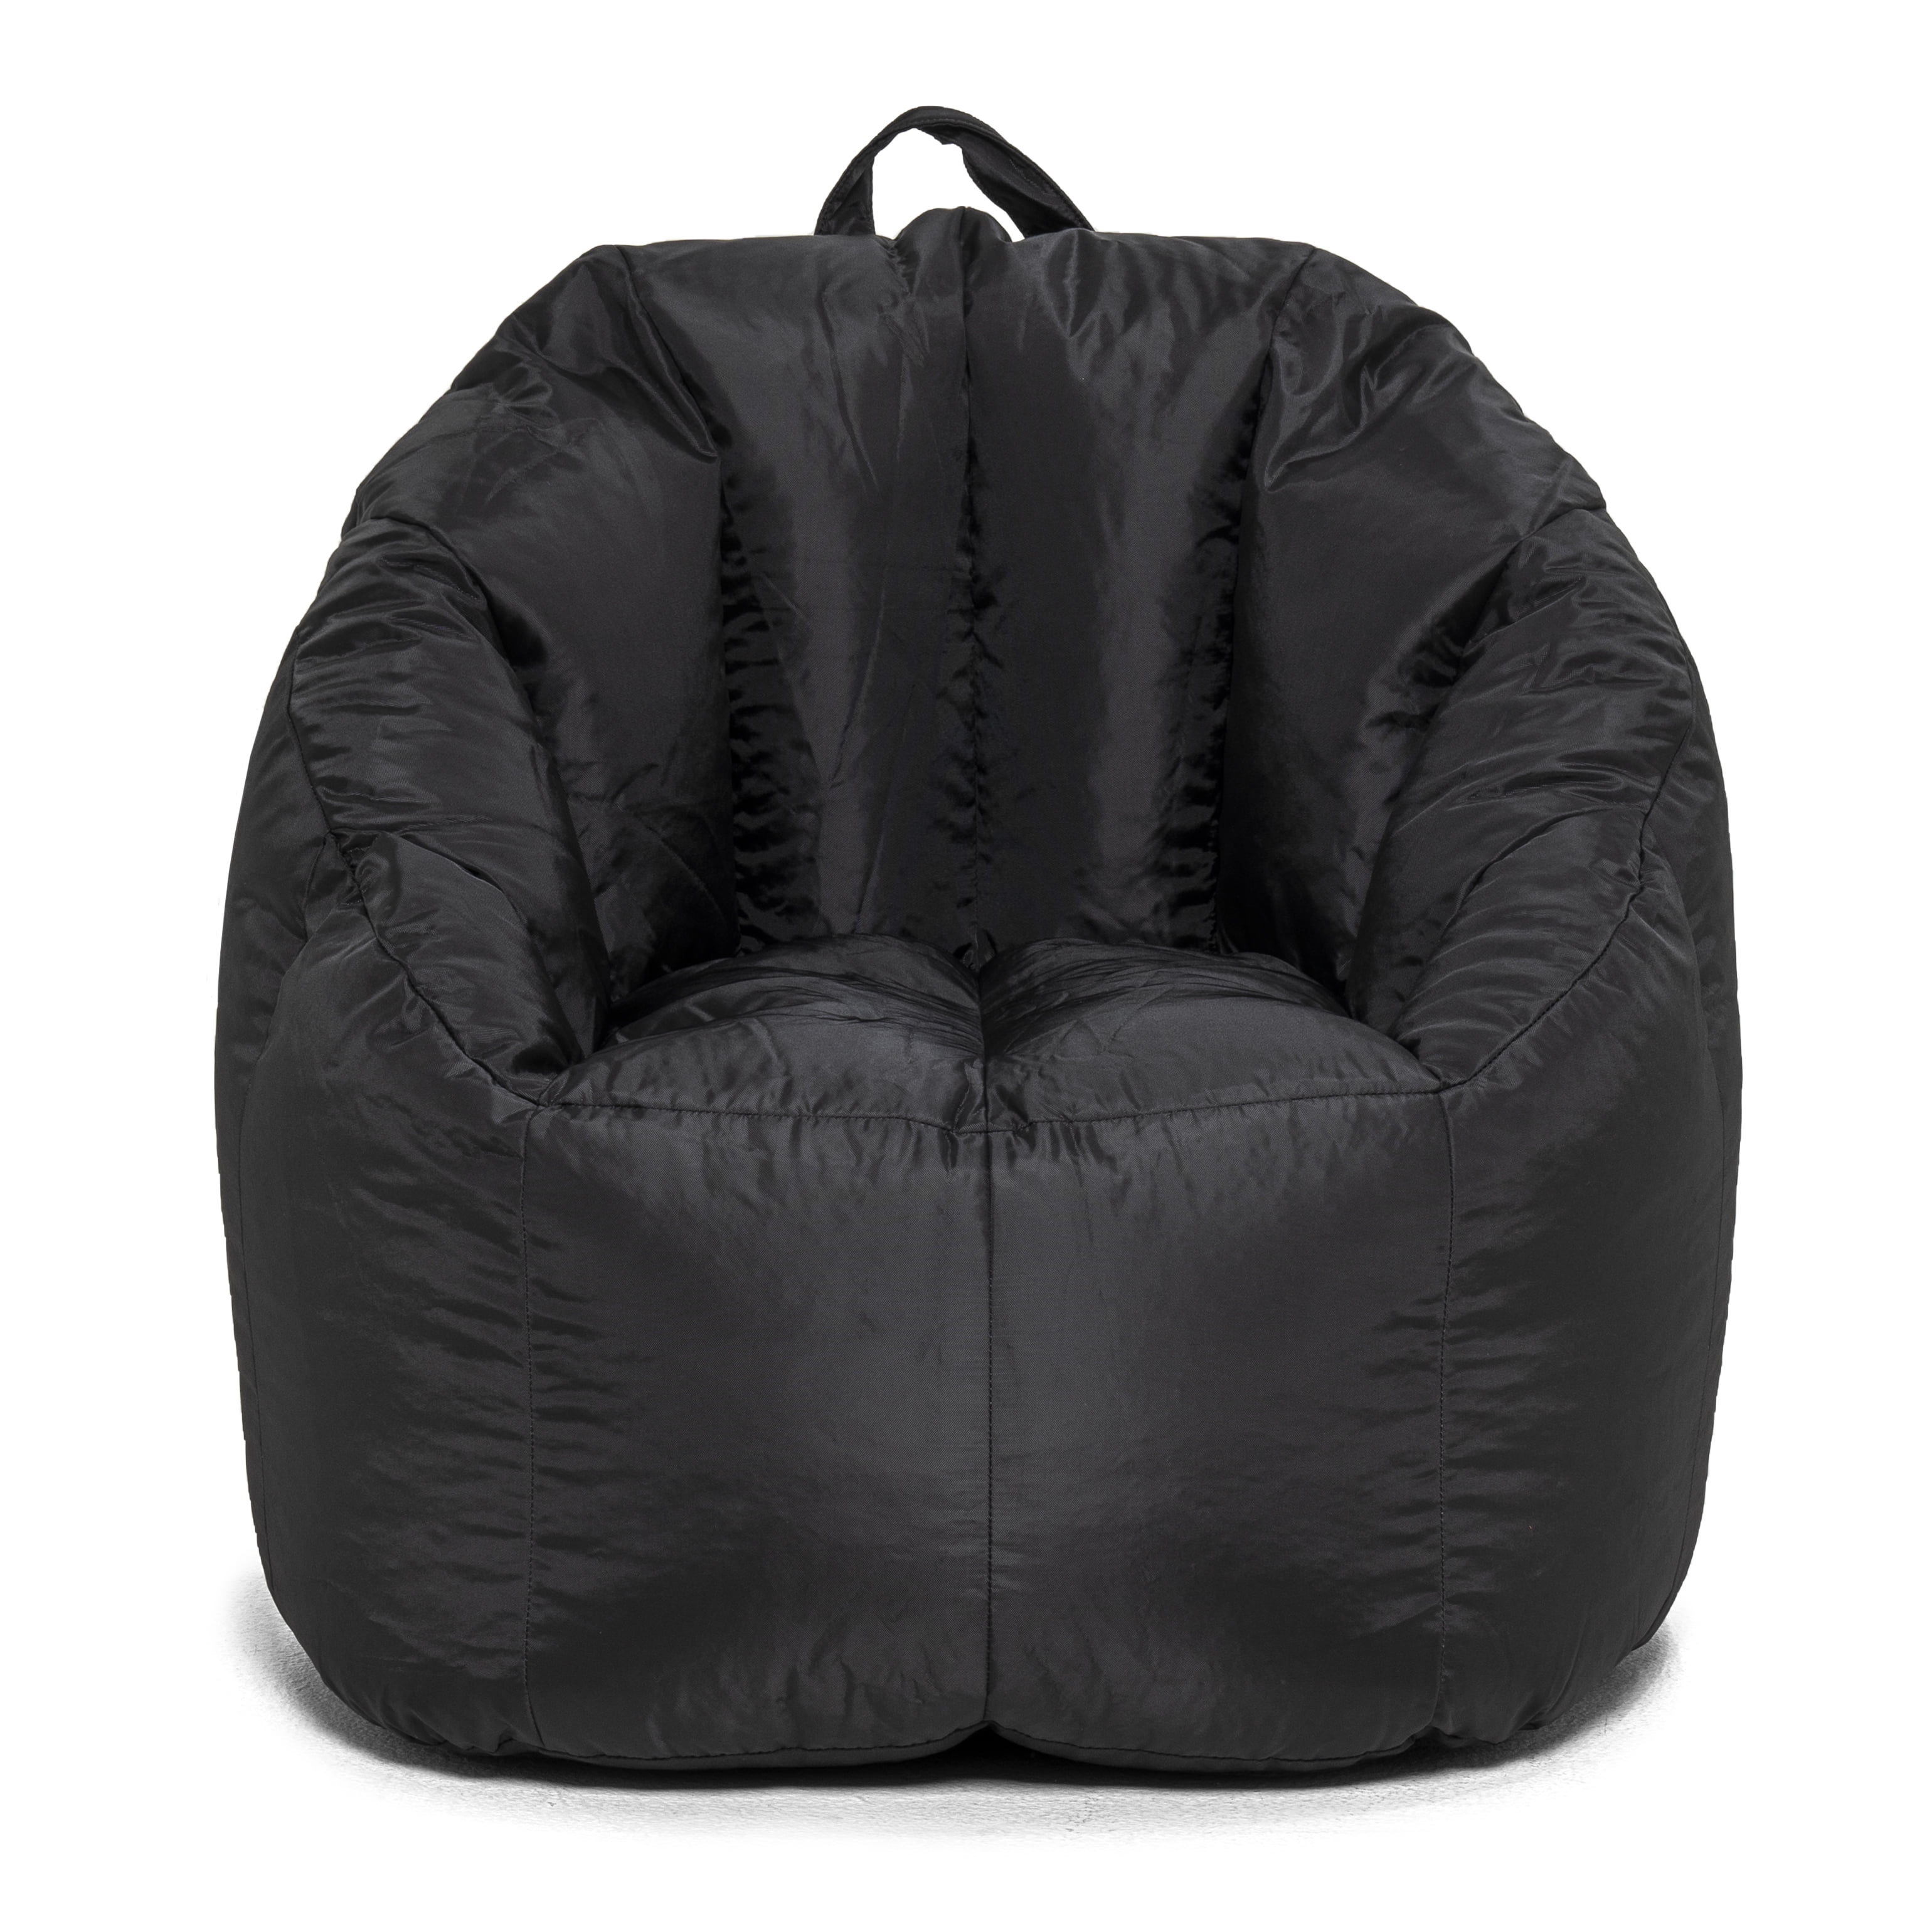 Big Joe Joey Bean Bag Chair Black, Big Joe Hug Bean Bag Chair Lunar Grey